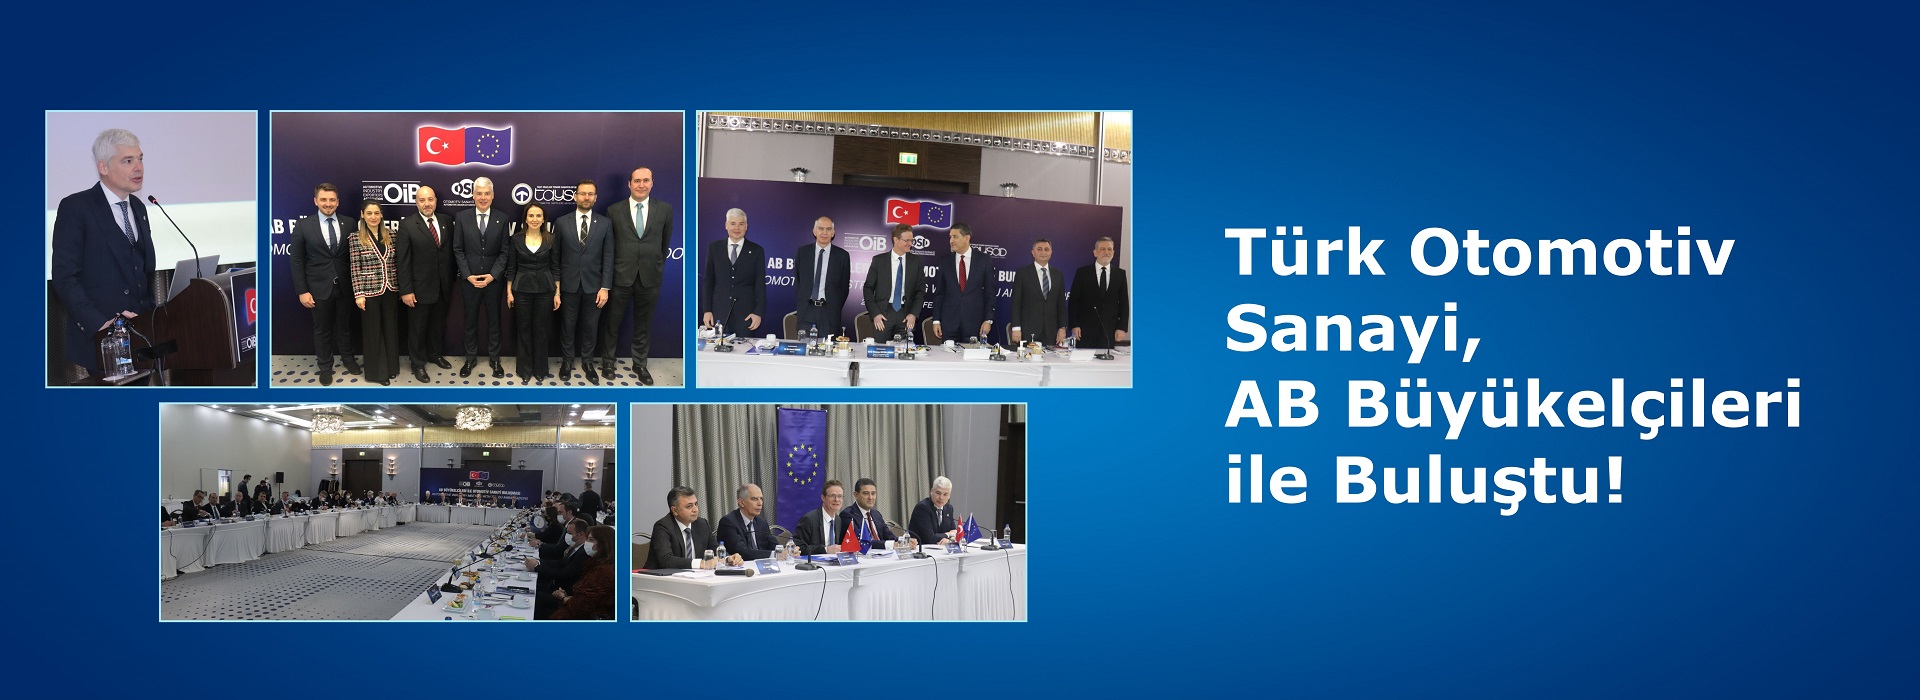 Türk Otomotiv Sanayi, AB Büyükelçileri ile Buluştu